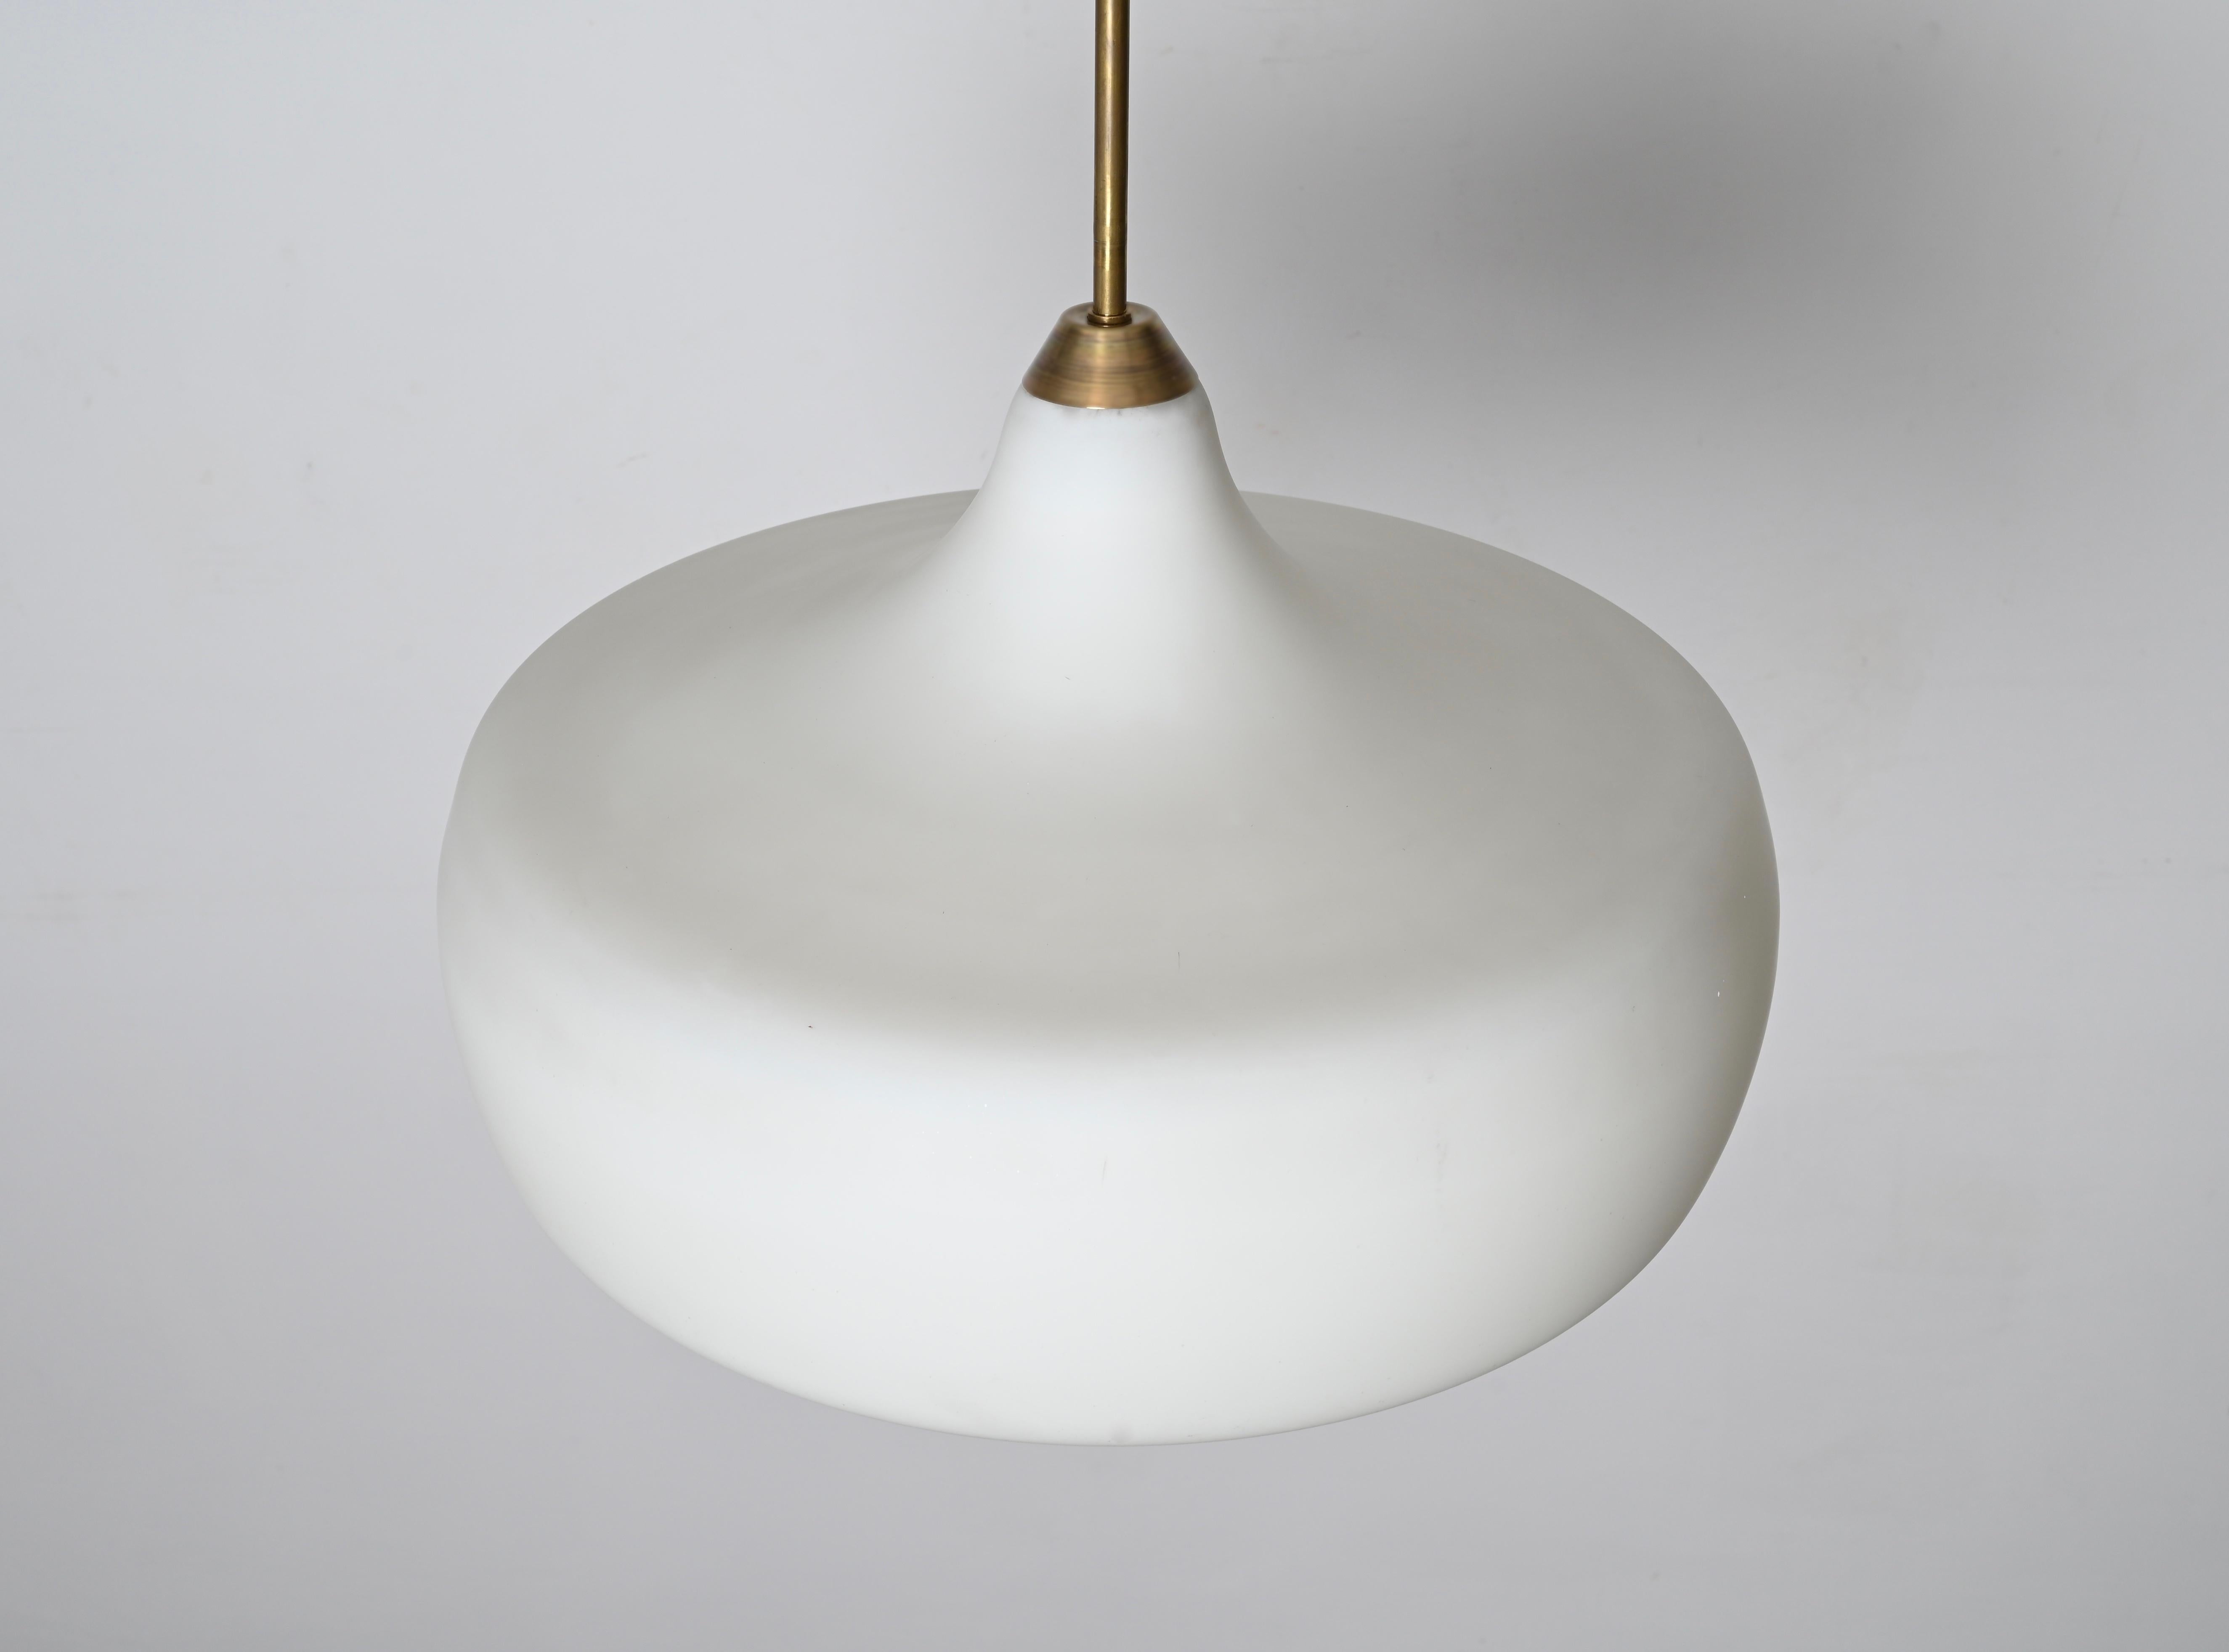 Stilnovo Opal Glass and Brass Chandelier Ceiling Lamp, Italian Lighting 1960s For Sale 6